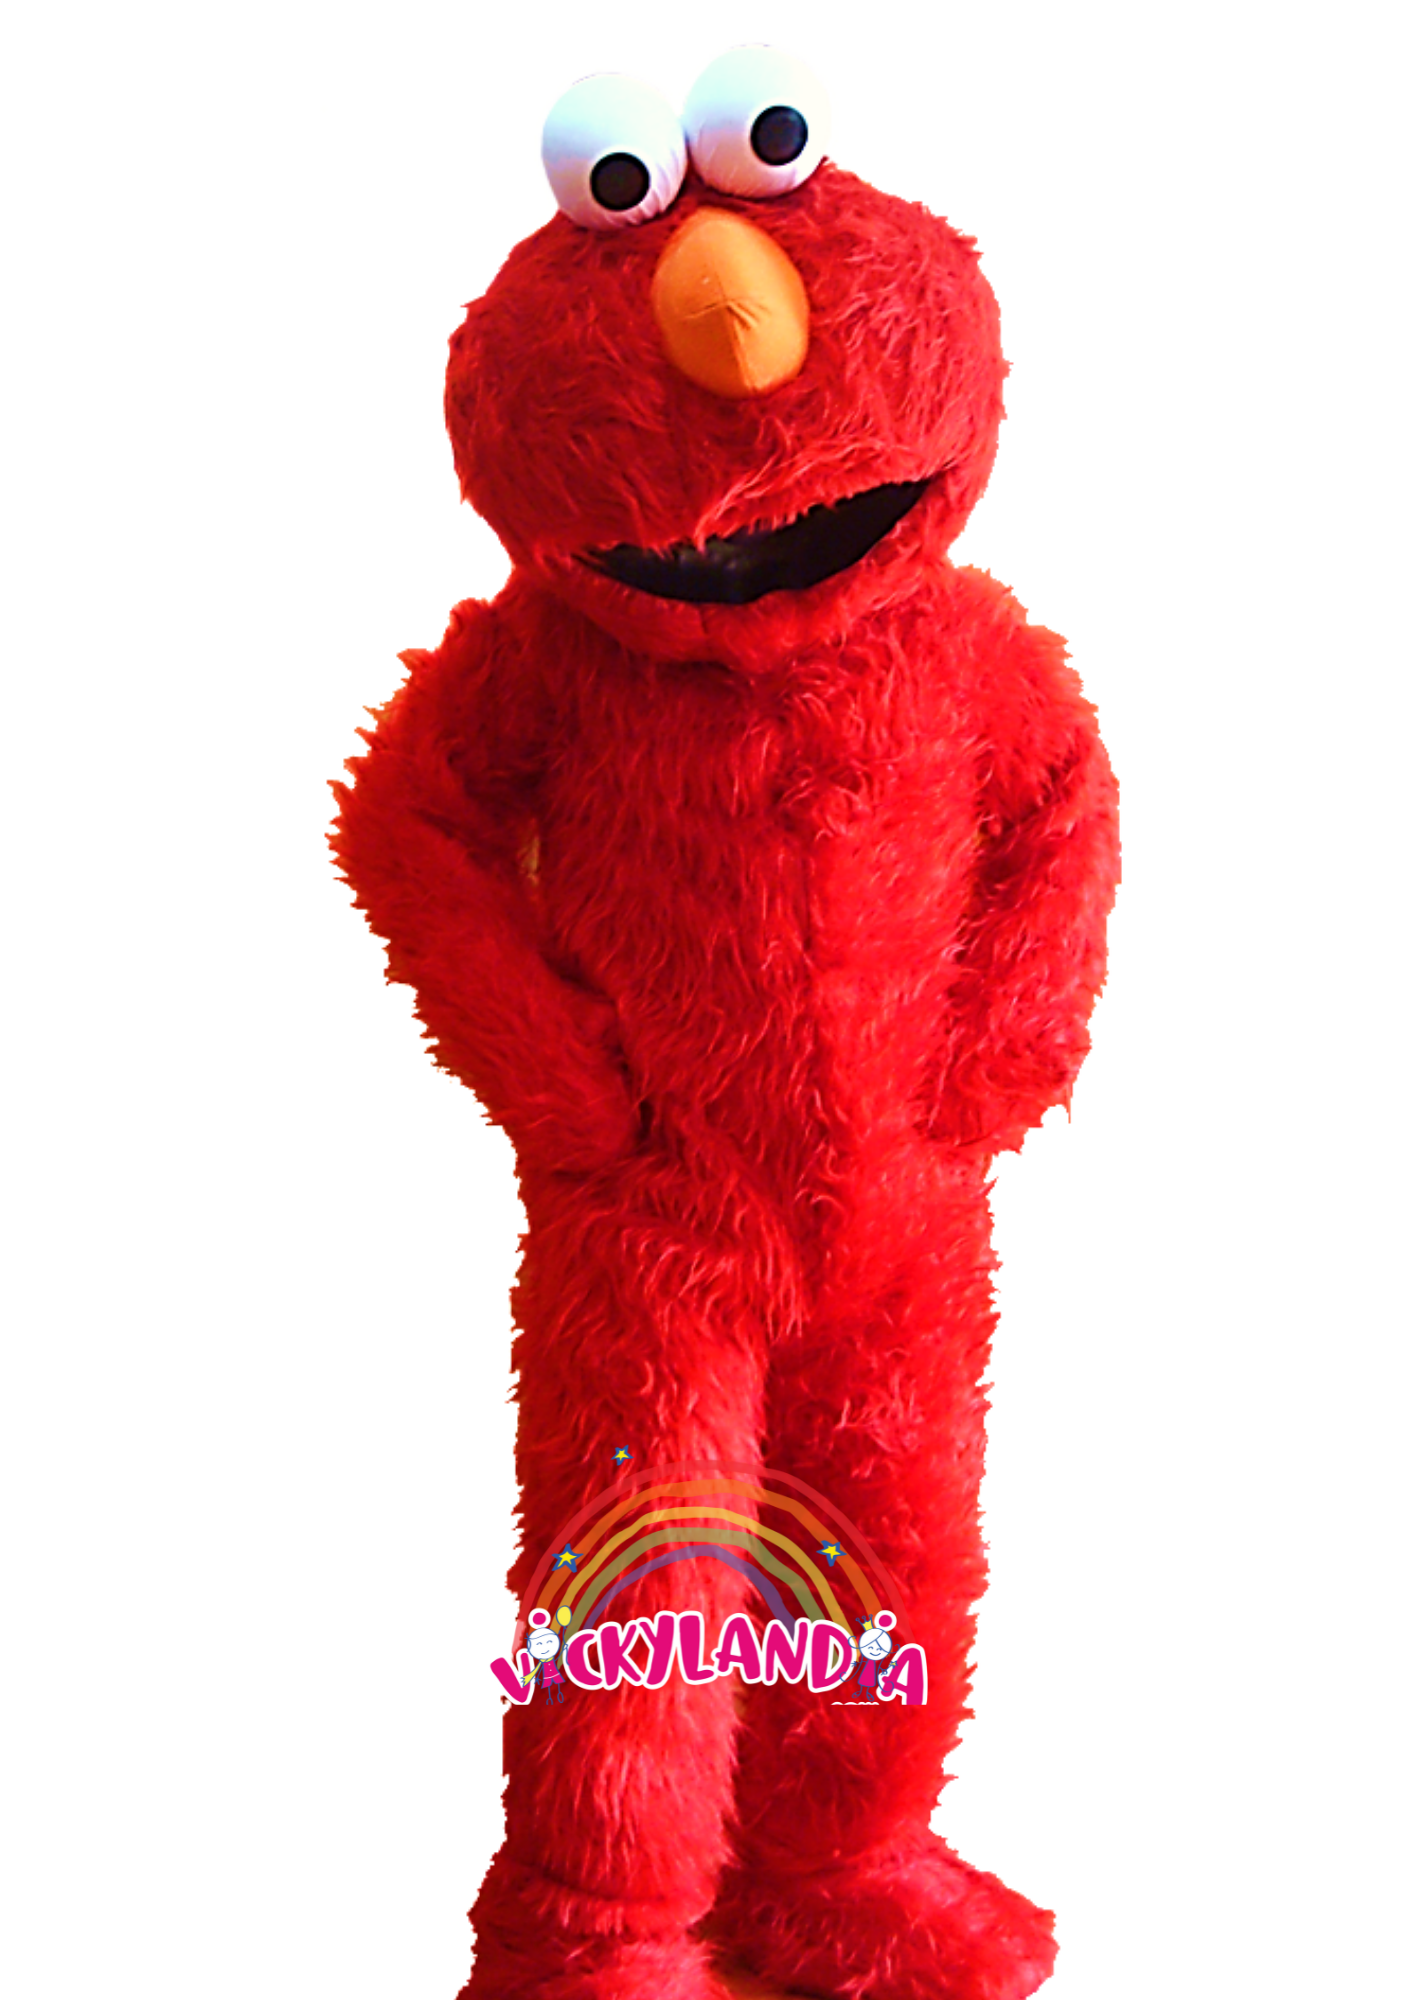 muñeco rojo cabezon mascota publicitaria vickylandia